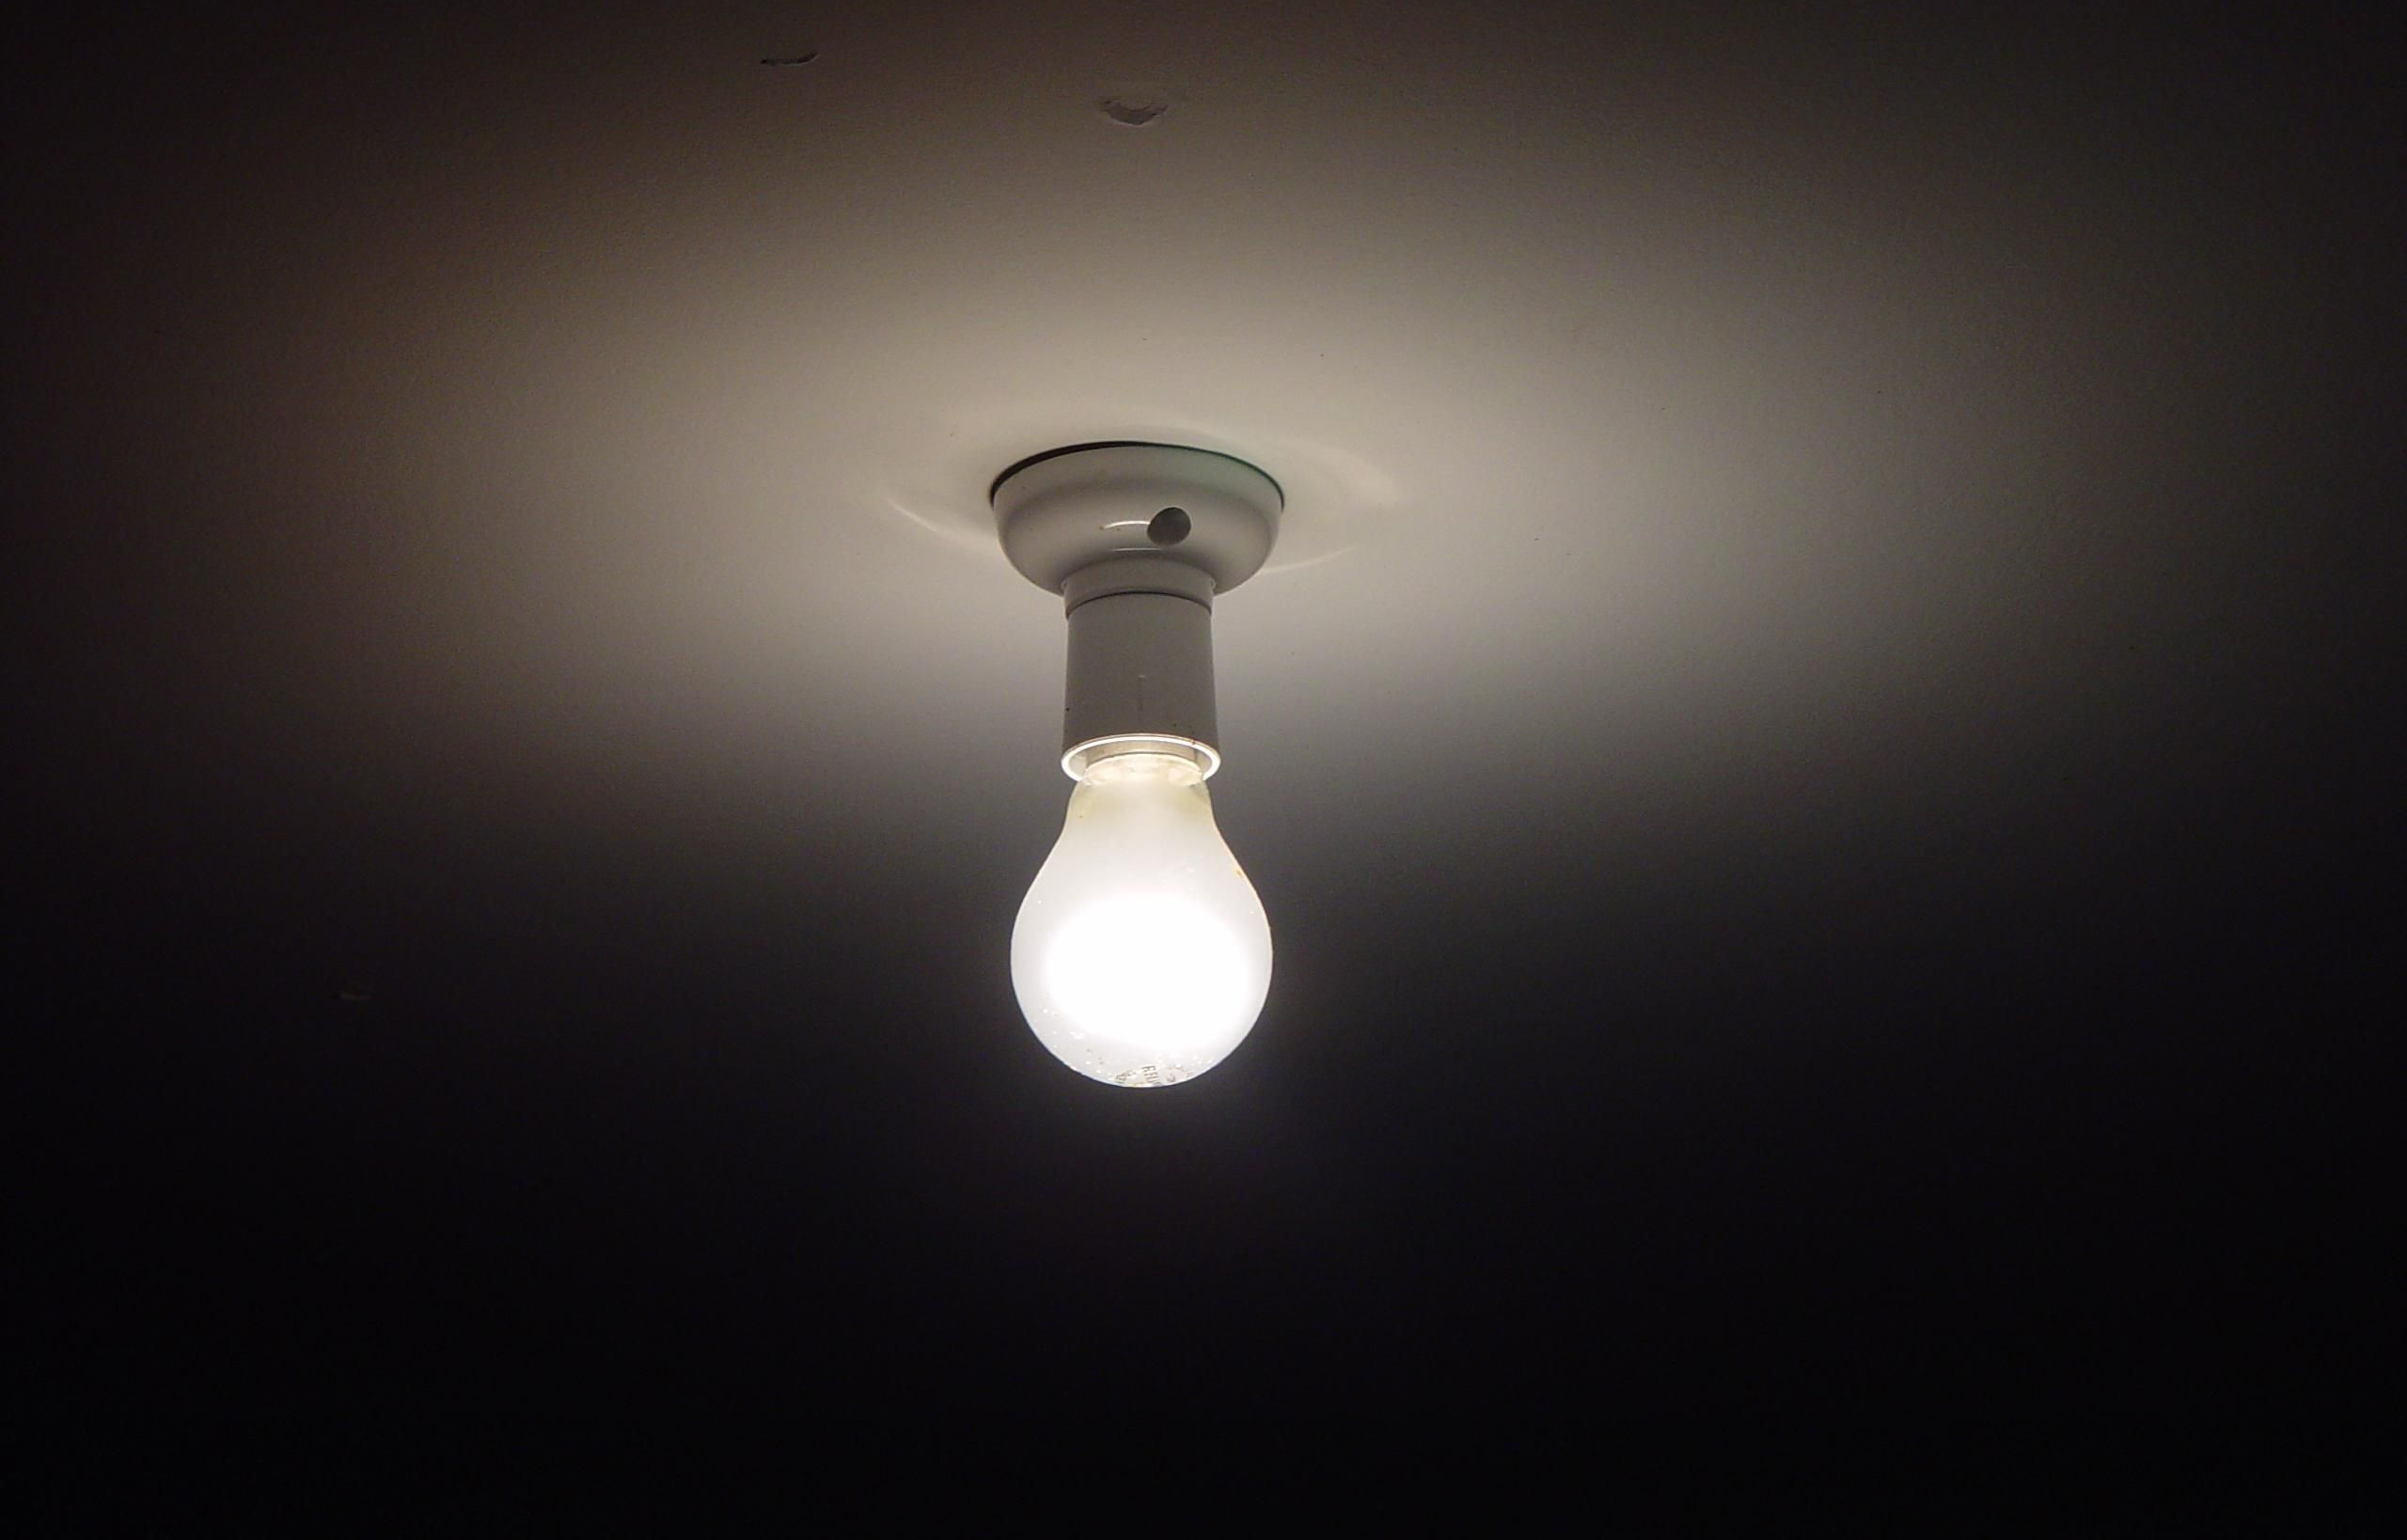 Lightbulb on the ceiling